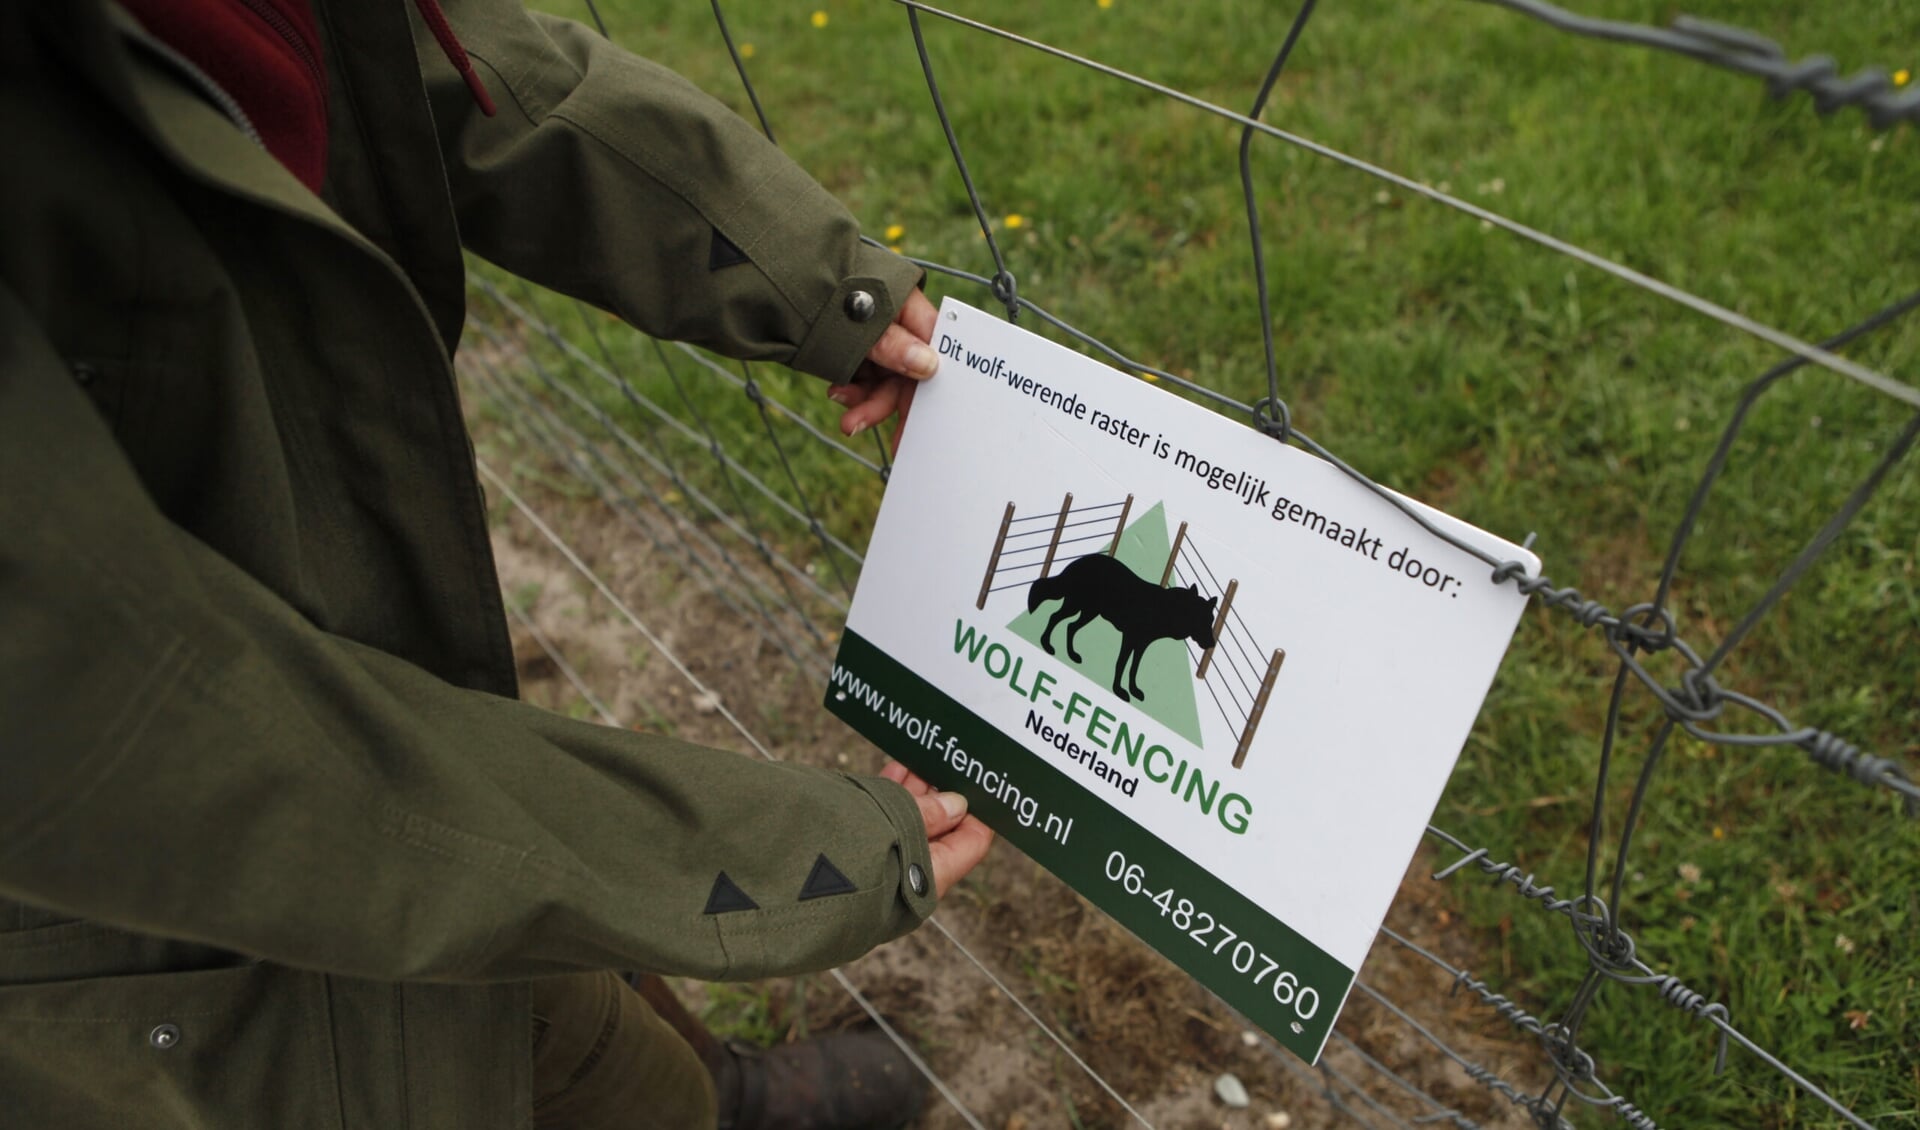 Wolf-Fencing Nederland adviseert veehouders, vaak in samenwerking met de overheid, bij preventieve maatregelen tegen de wolf.